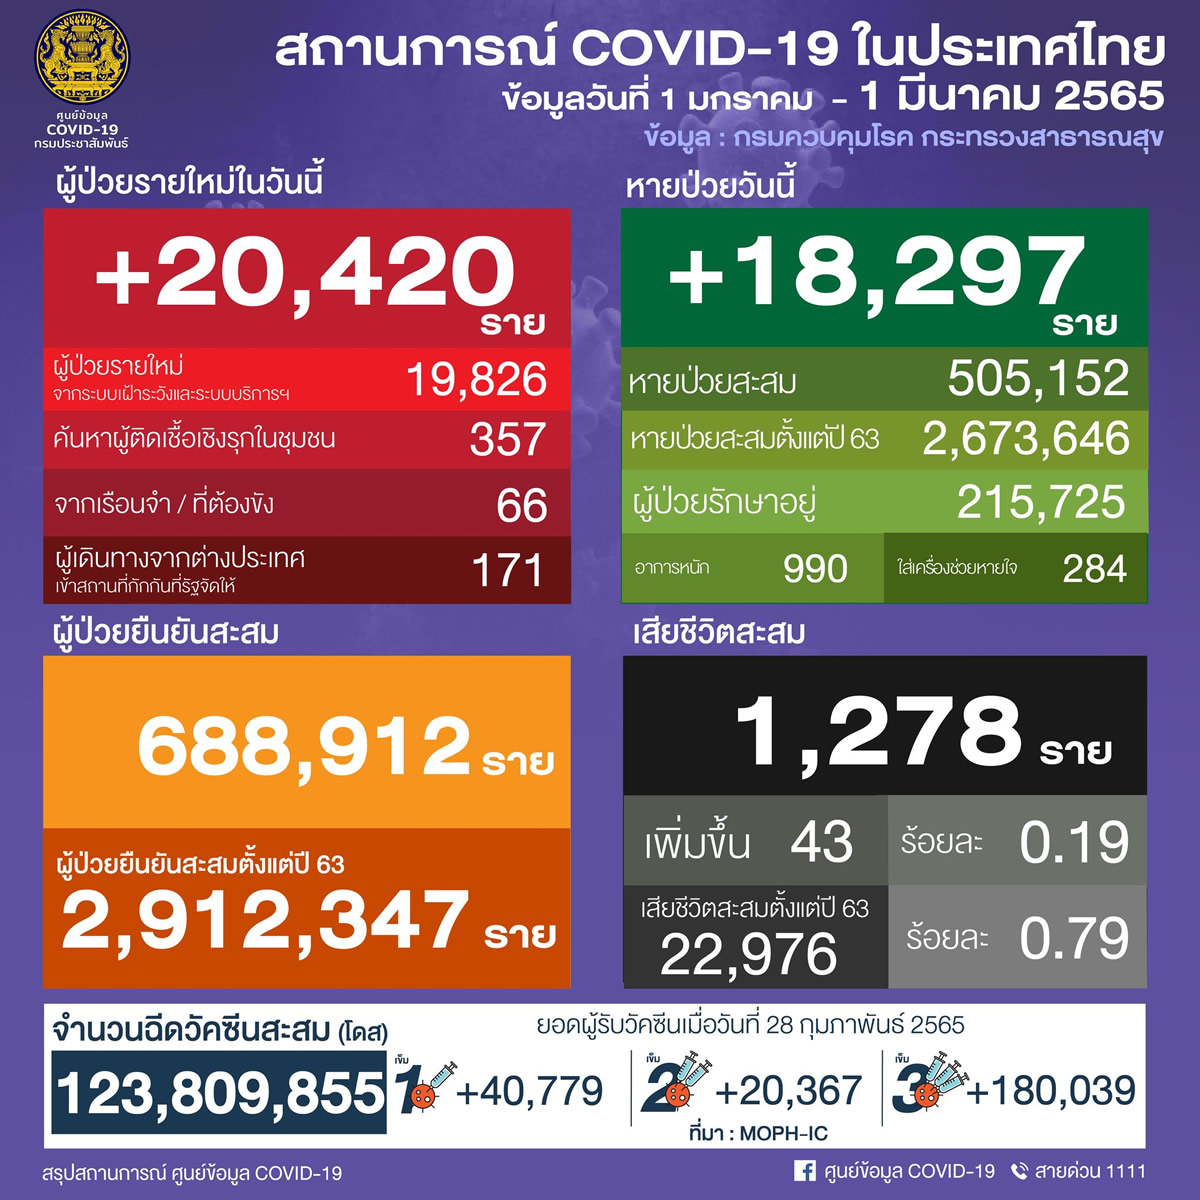 タイ 20,420人陽性 43人死亡／バンコク 2,752人陽性／ノンタブリ 1,292人陽性／チョンブリ 1,197人陽性［2022年3月1日発表］